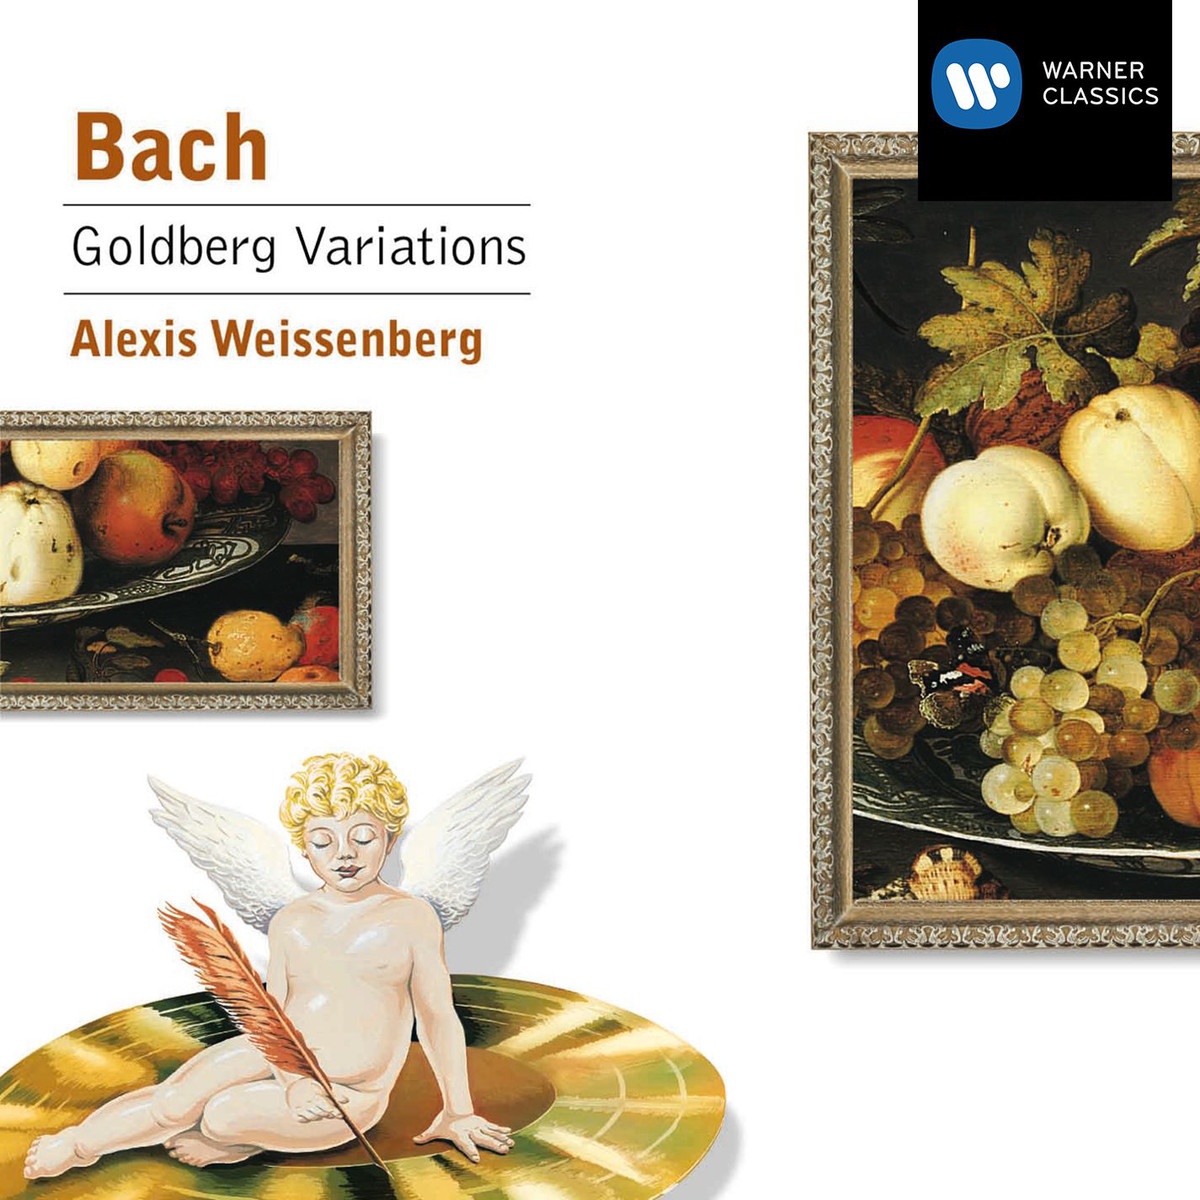 Goldberg Variations BWV988: Variation 10 - Fughetta